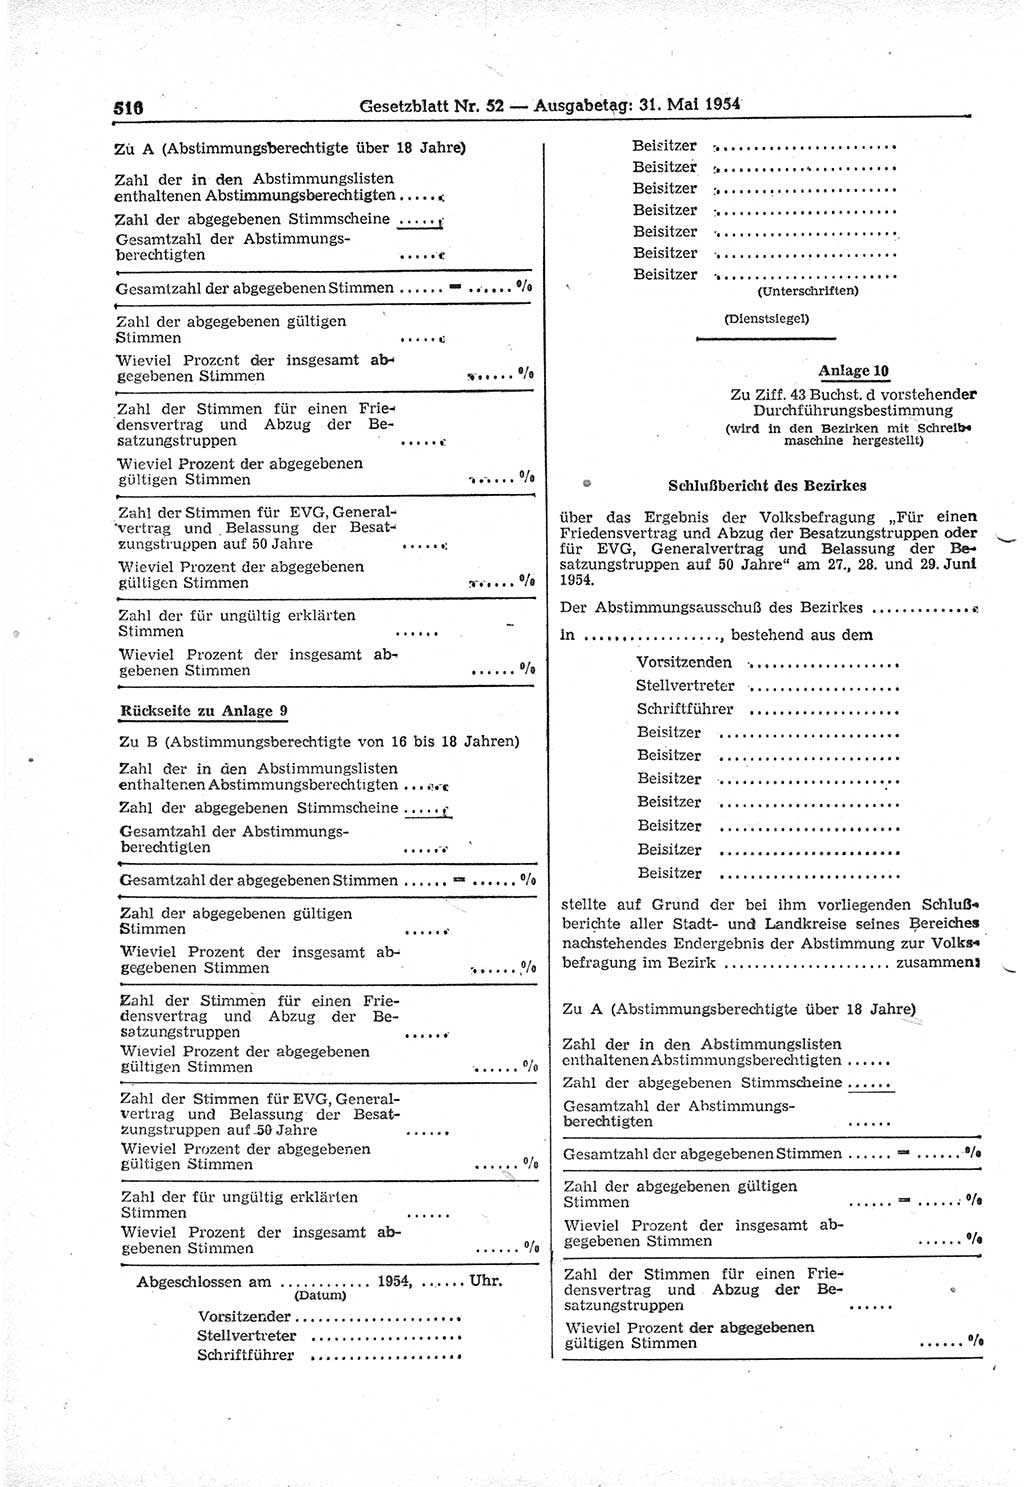 Gesetzblatt (GBl.) der Deutschen Demokratischen Republik (DDR) 1954, Seite 516 (GBl. DDR 1954, S. 516)